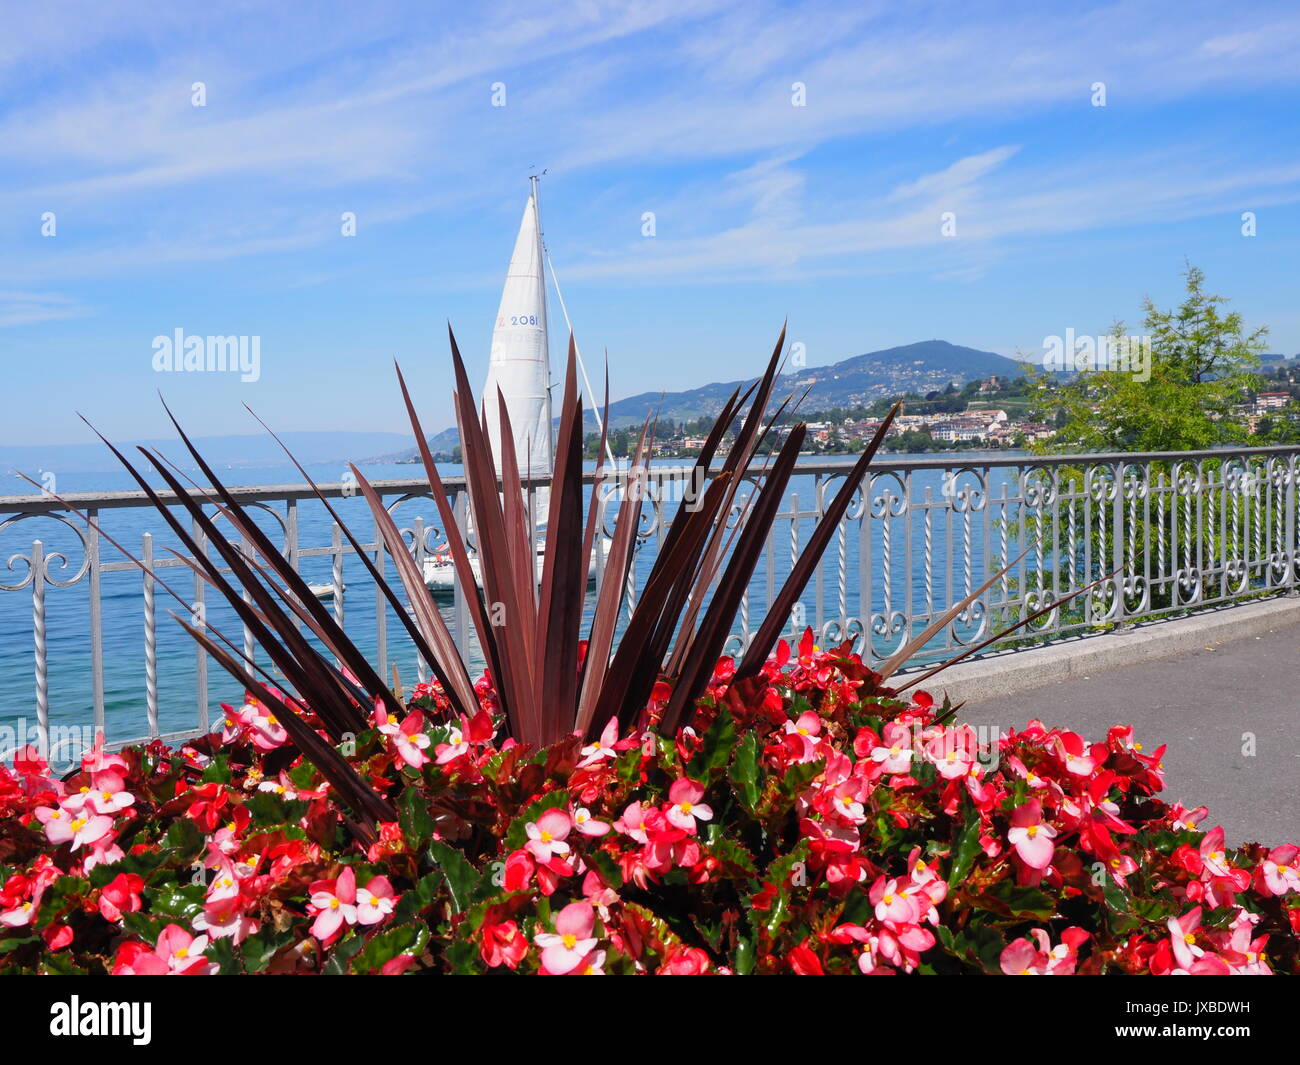 Schönheit Bunte rote Blumen auf der Promenade in Montreux am Genfer See in  der Schweiz Stockfotografie - Alamy